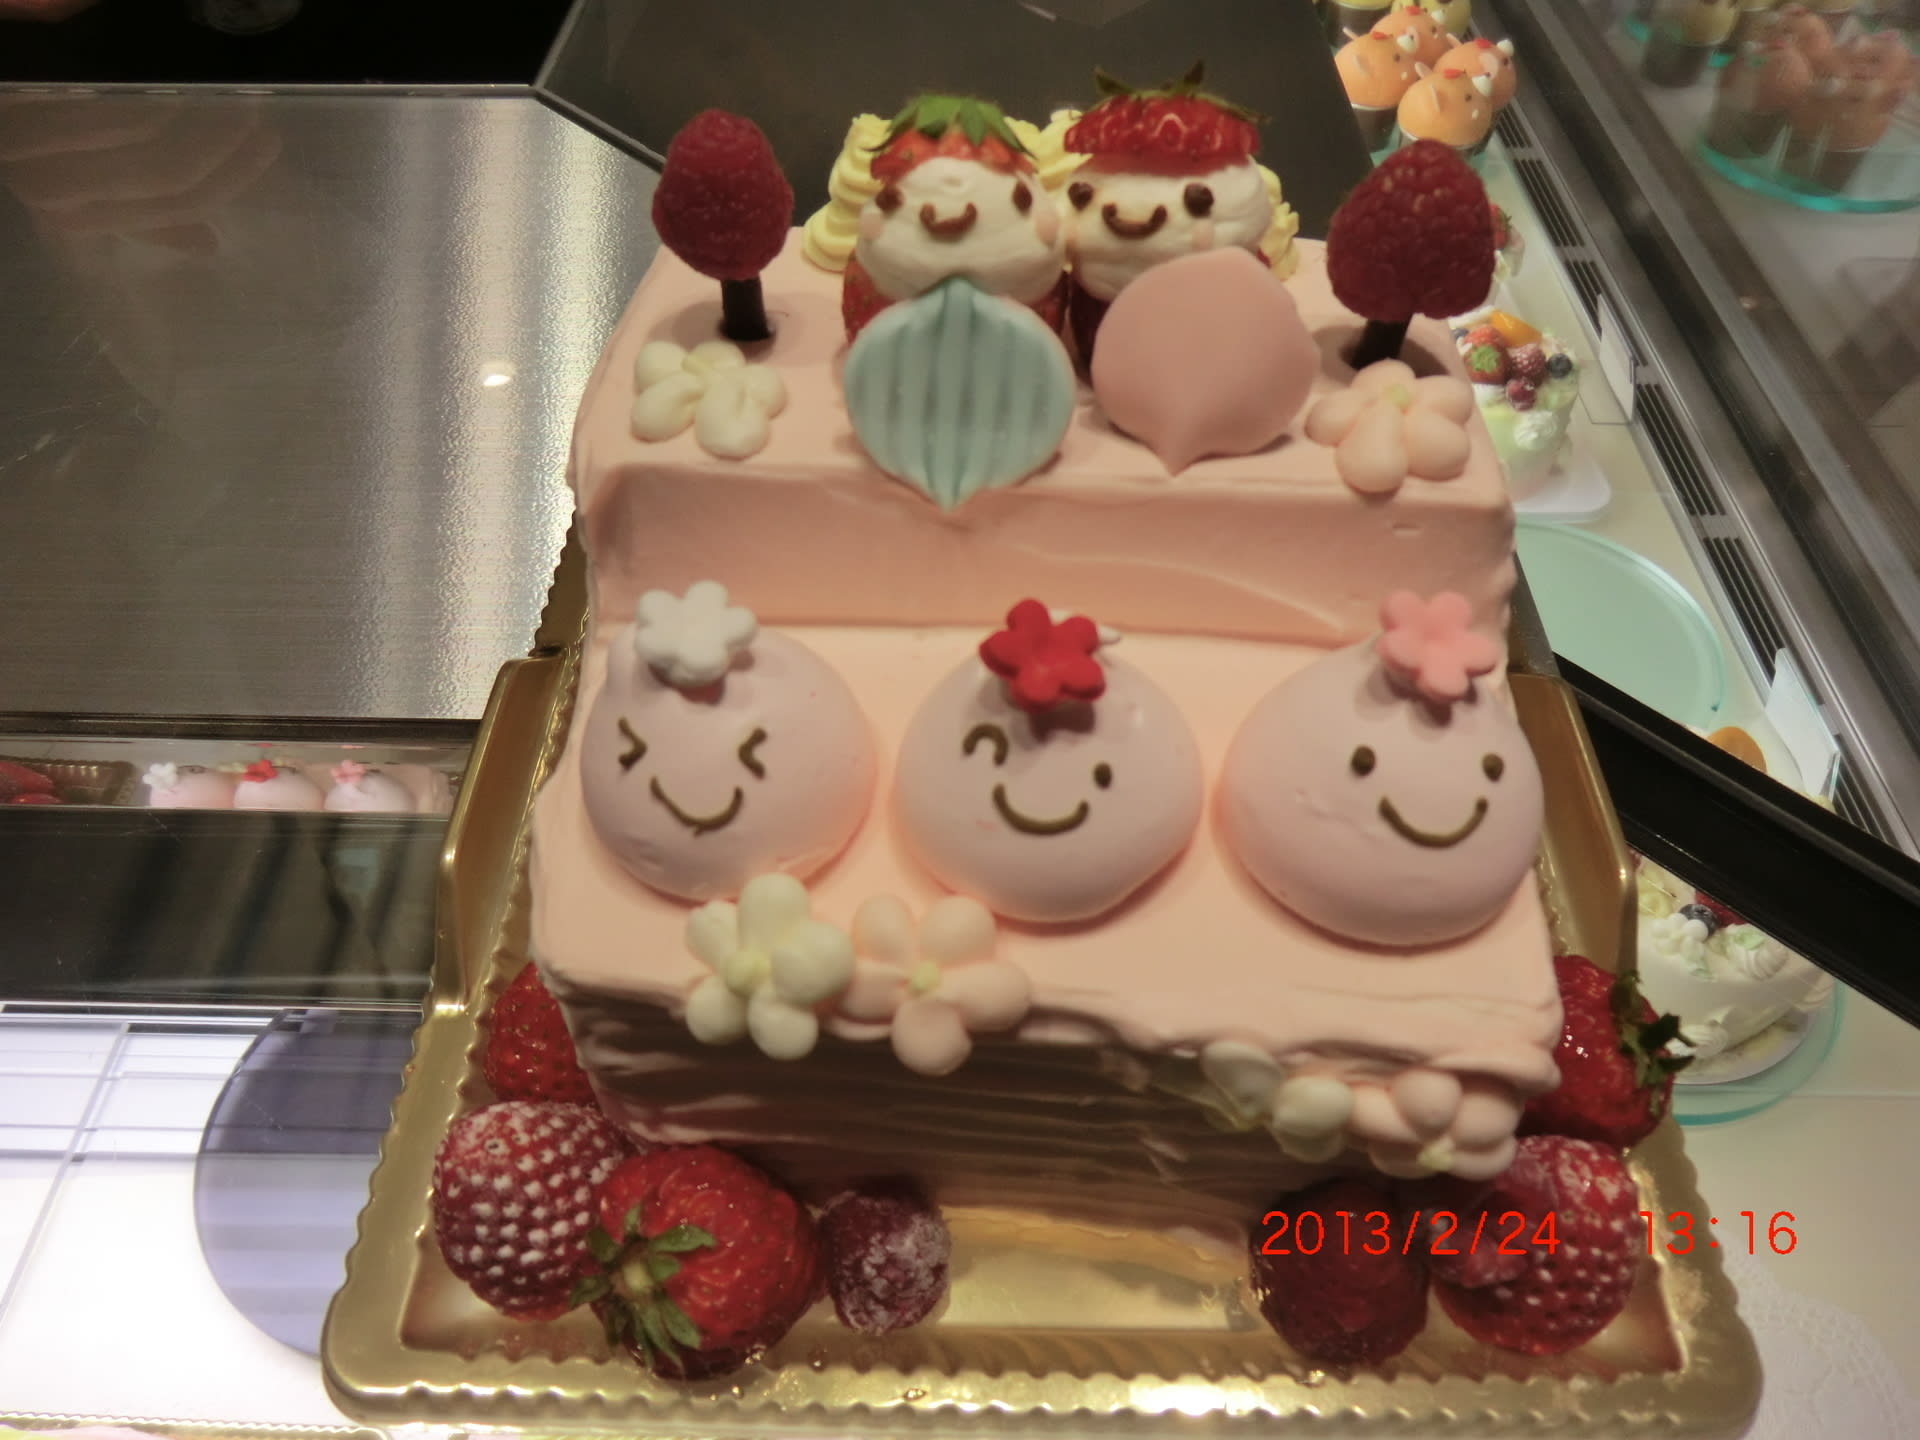 ロリオリの可愛い雛祭りケーキ 伊勢丹新宿本店 投稿者 佐渡の翼 佐渡の翼